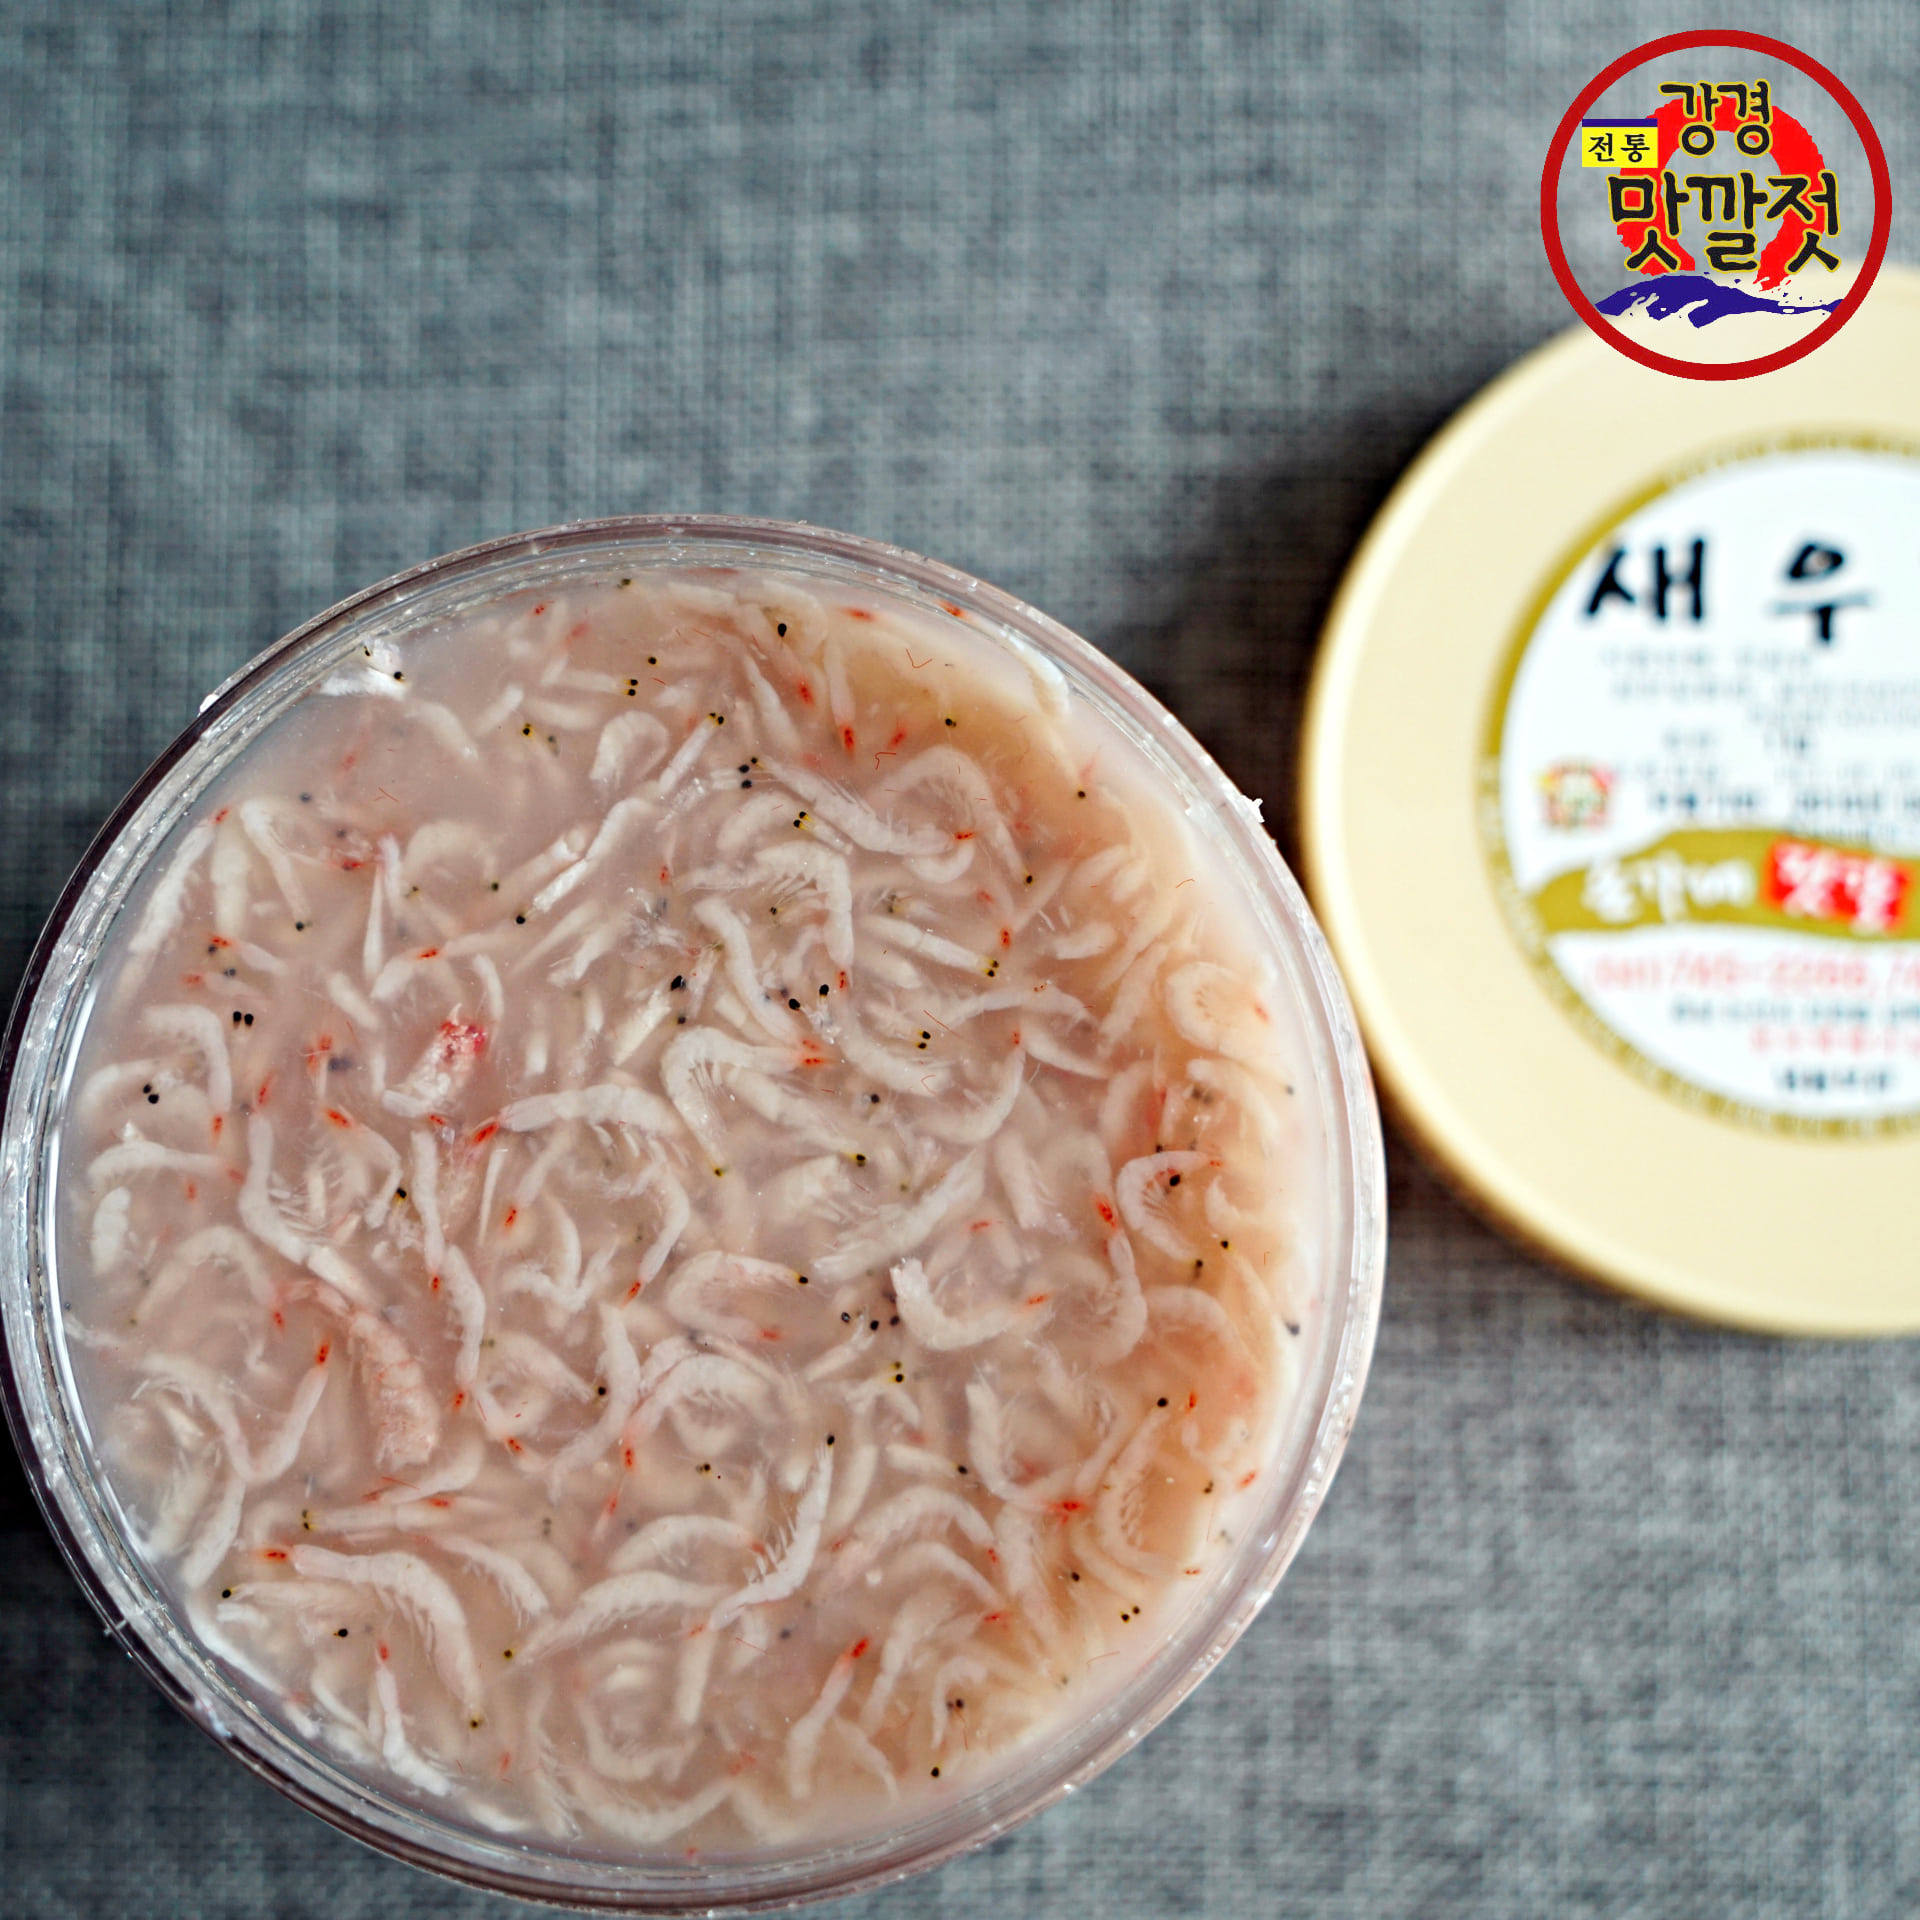 허영만의 백반기행 큰손식당 강경 최상급 새우젓 추젓 1kg